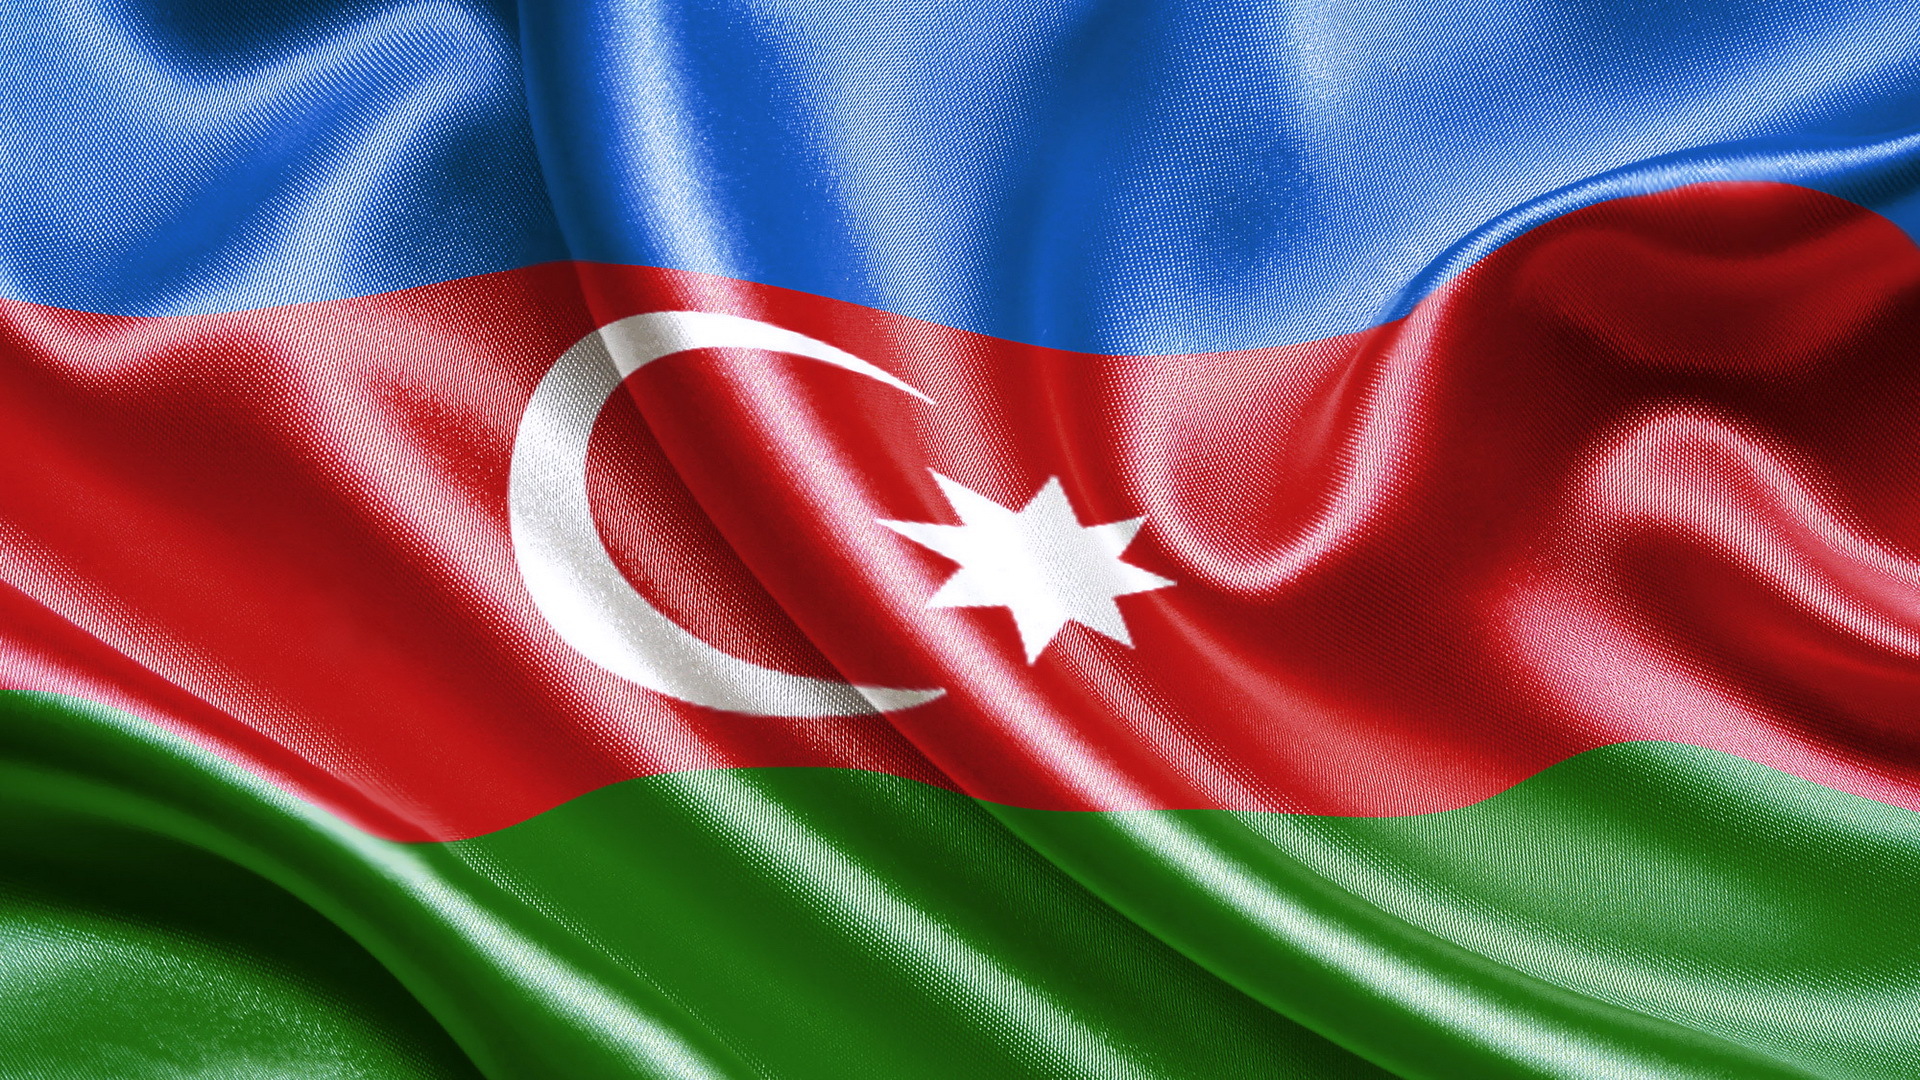 Yükle azeri. Флаг Азербайджана. Флаг АЙЗЕРБАРЖАН. Флаг азербайджанской Республики.